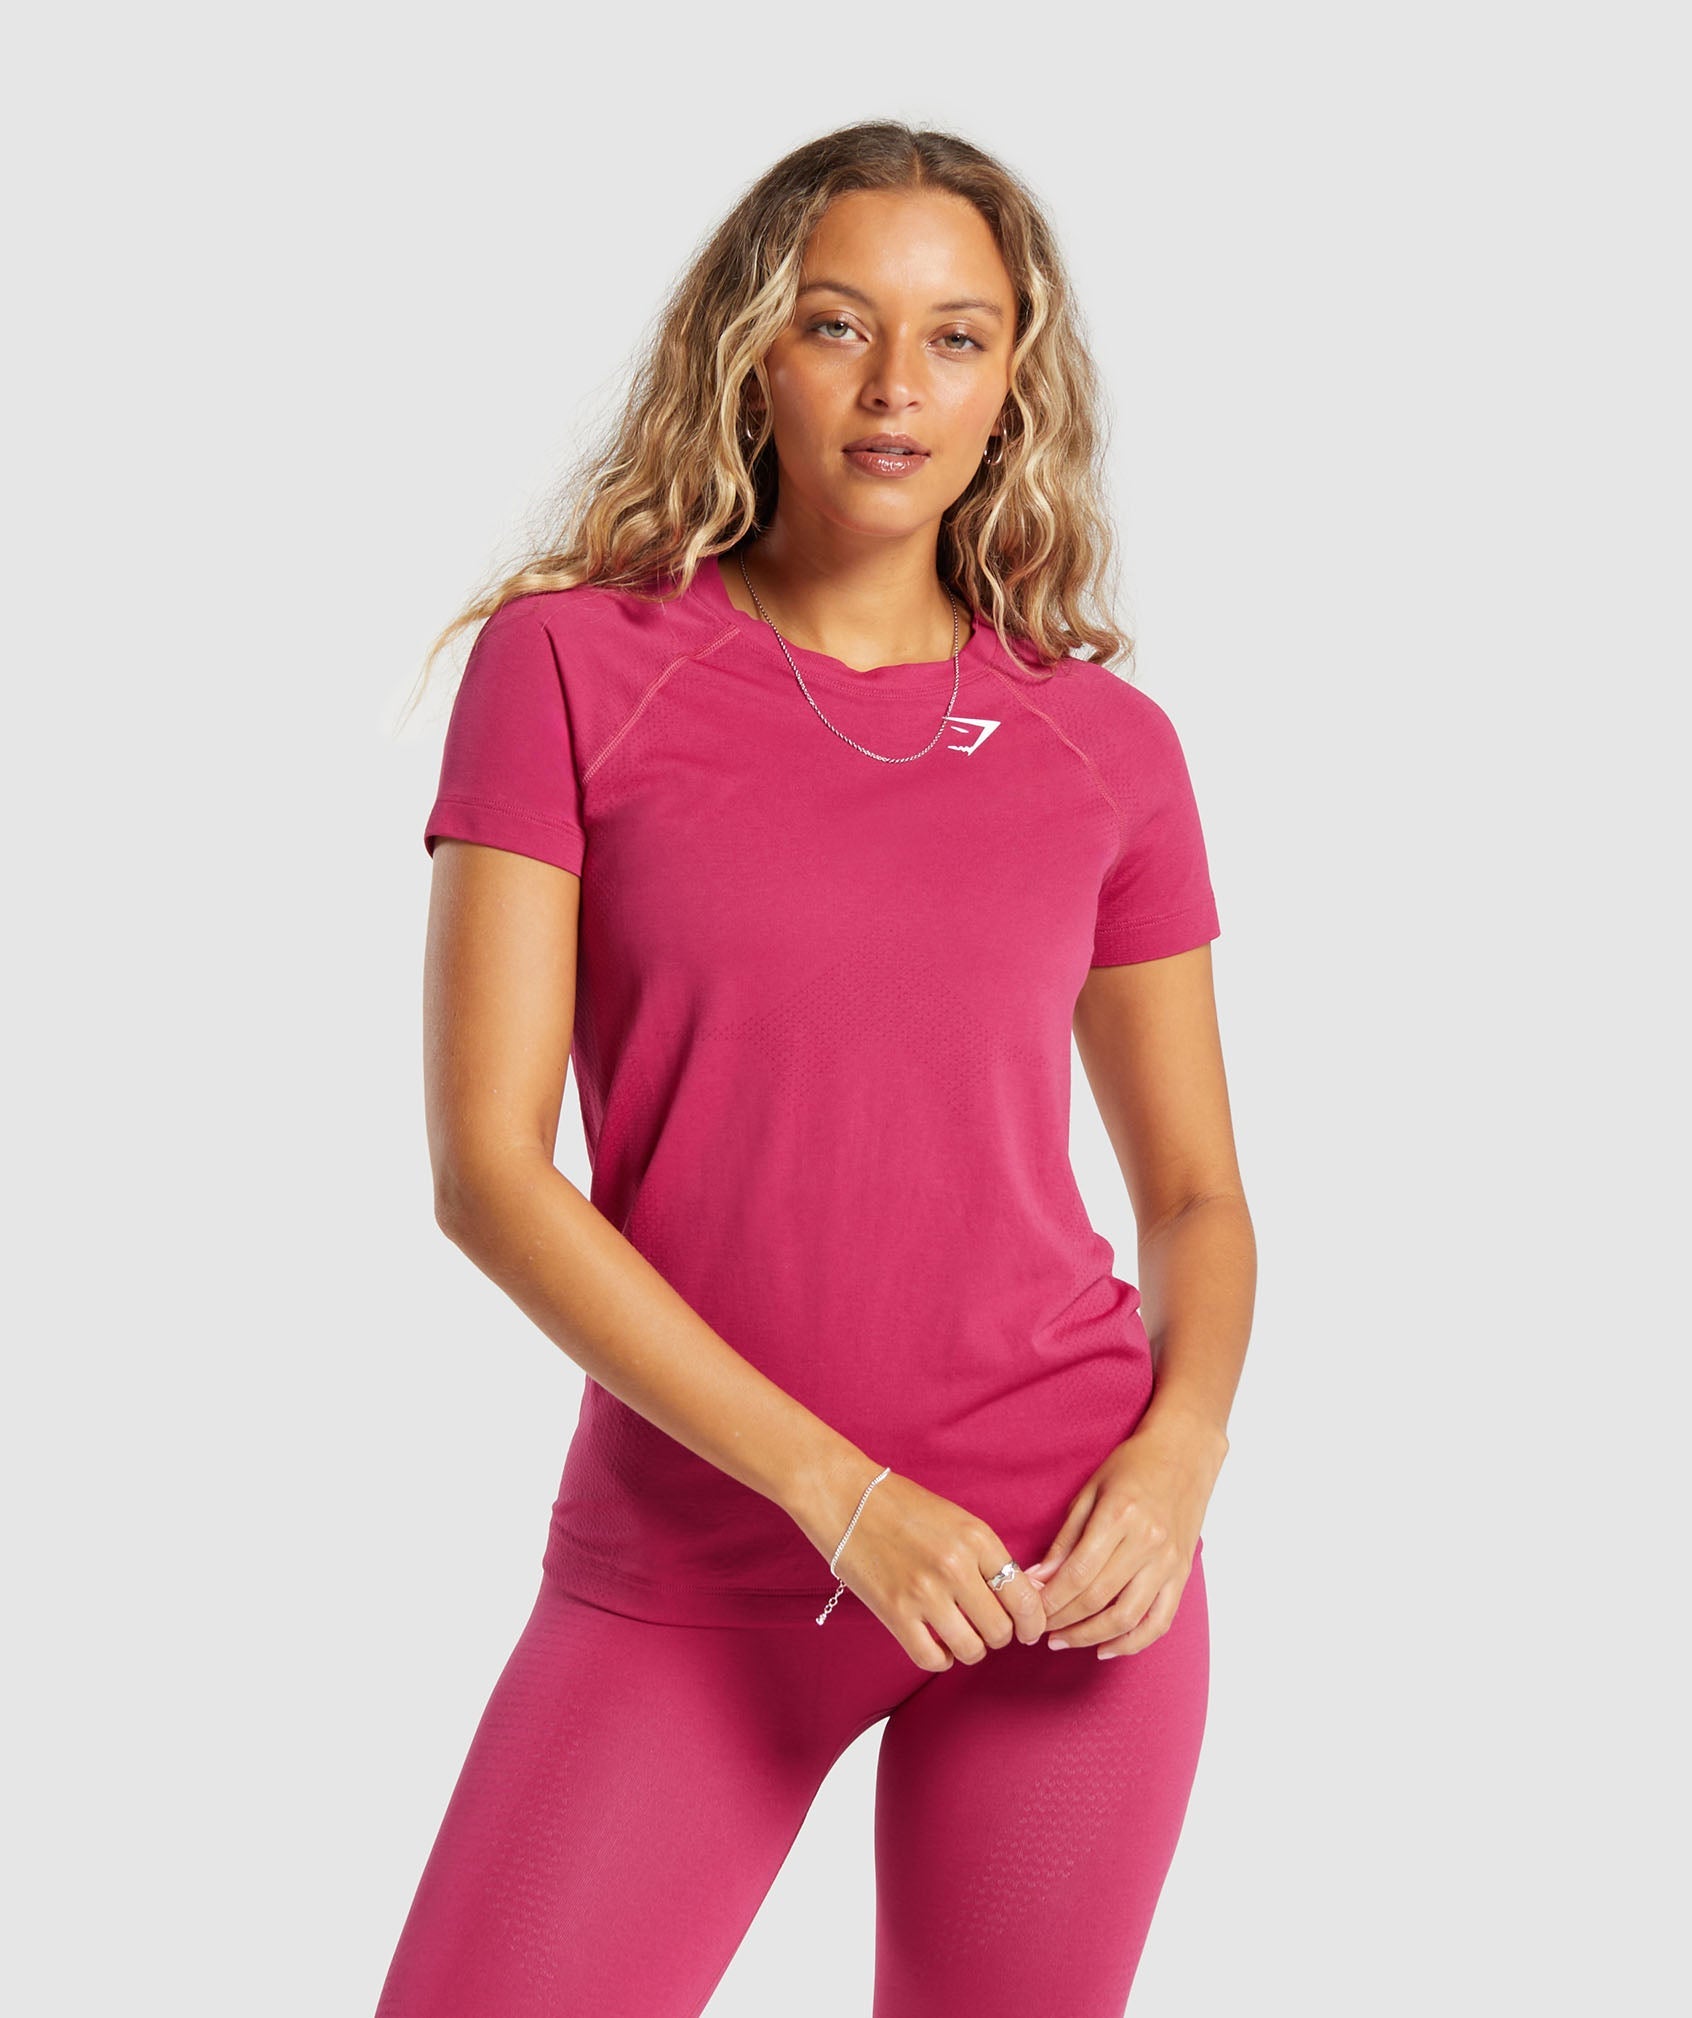 Vital Seamless  2.0 Light T Shirt in Vintage Pink/Marl is niet op voorraad